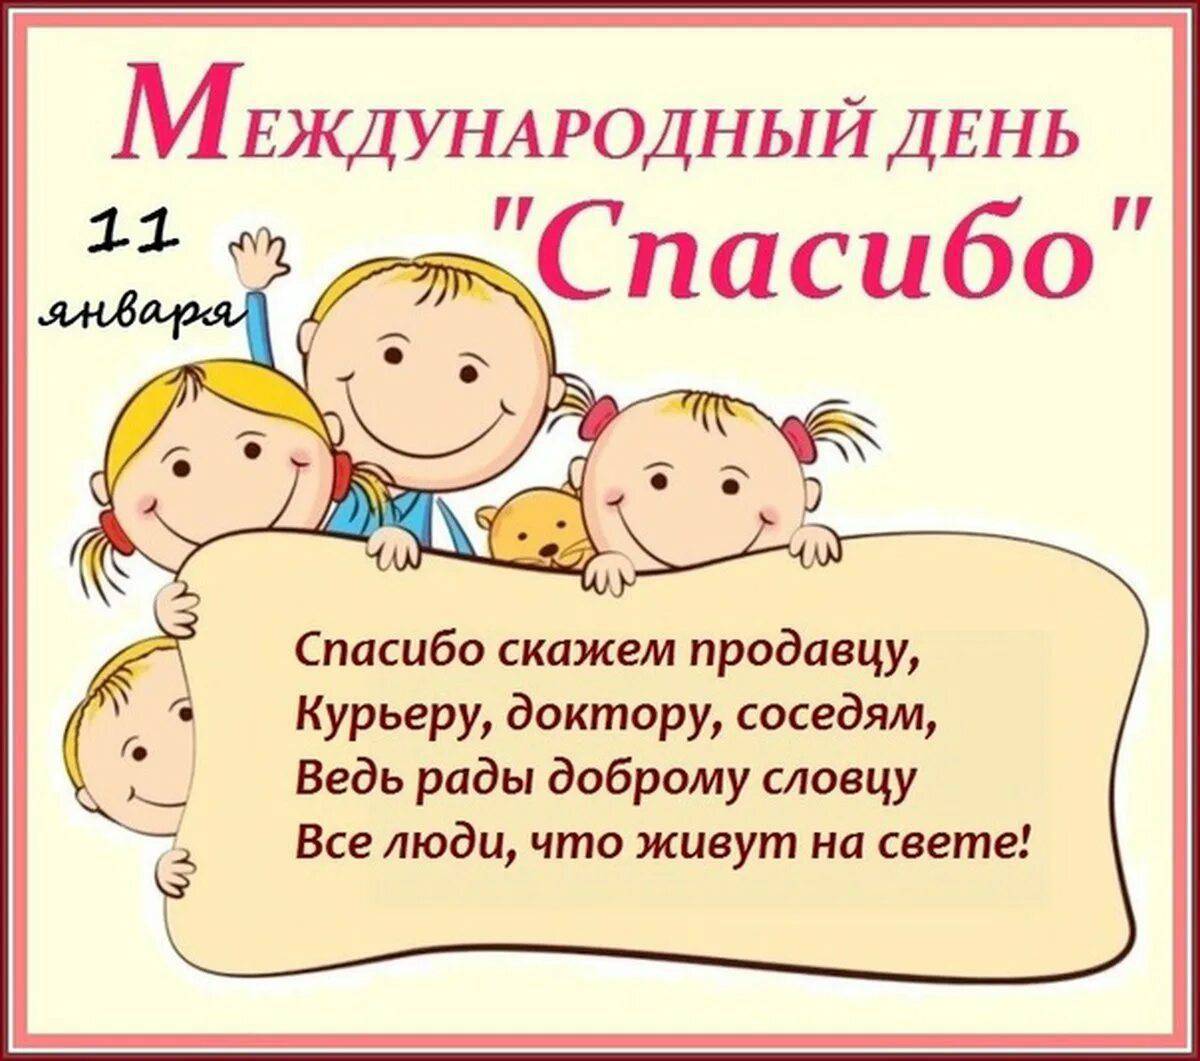 Всемирный день спасибо для детей #35